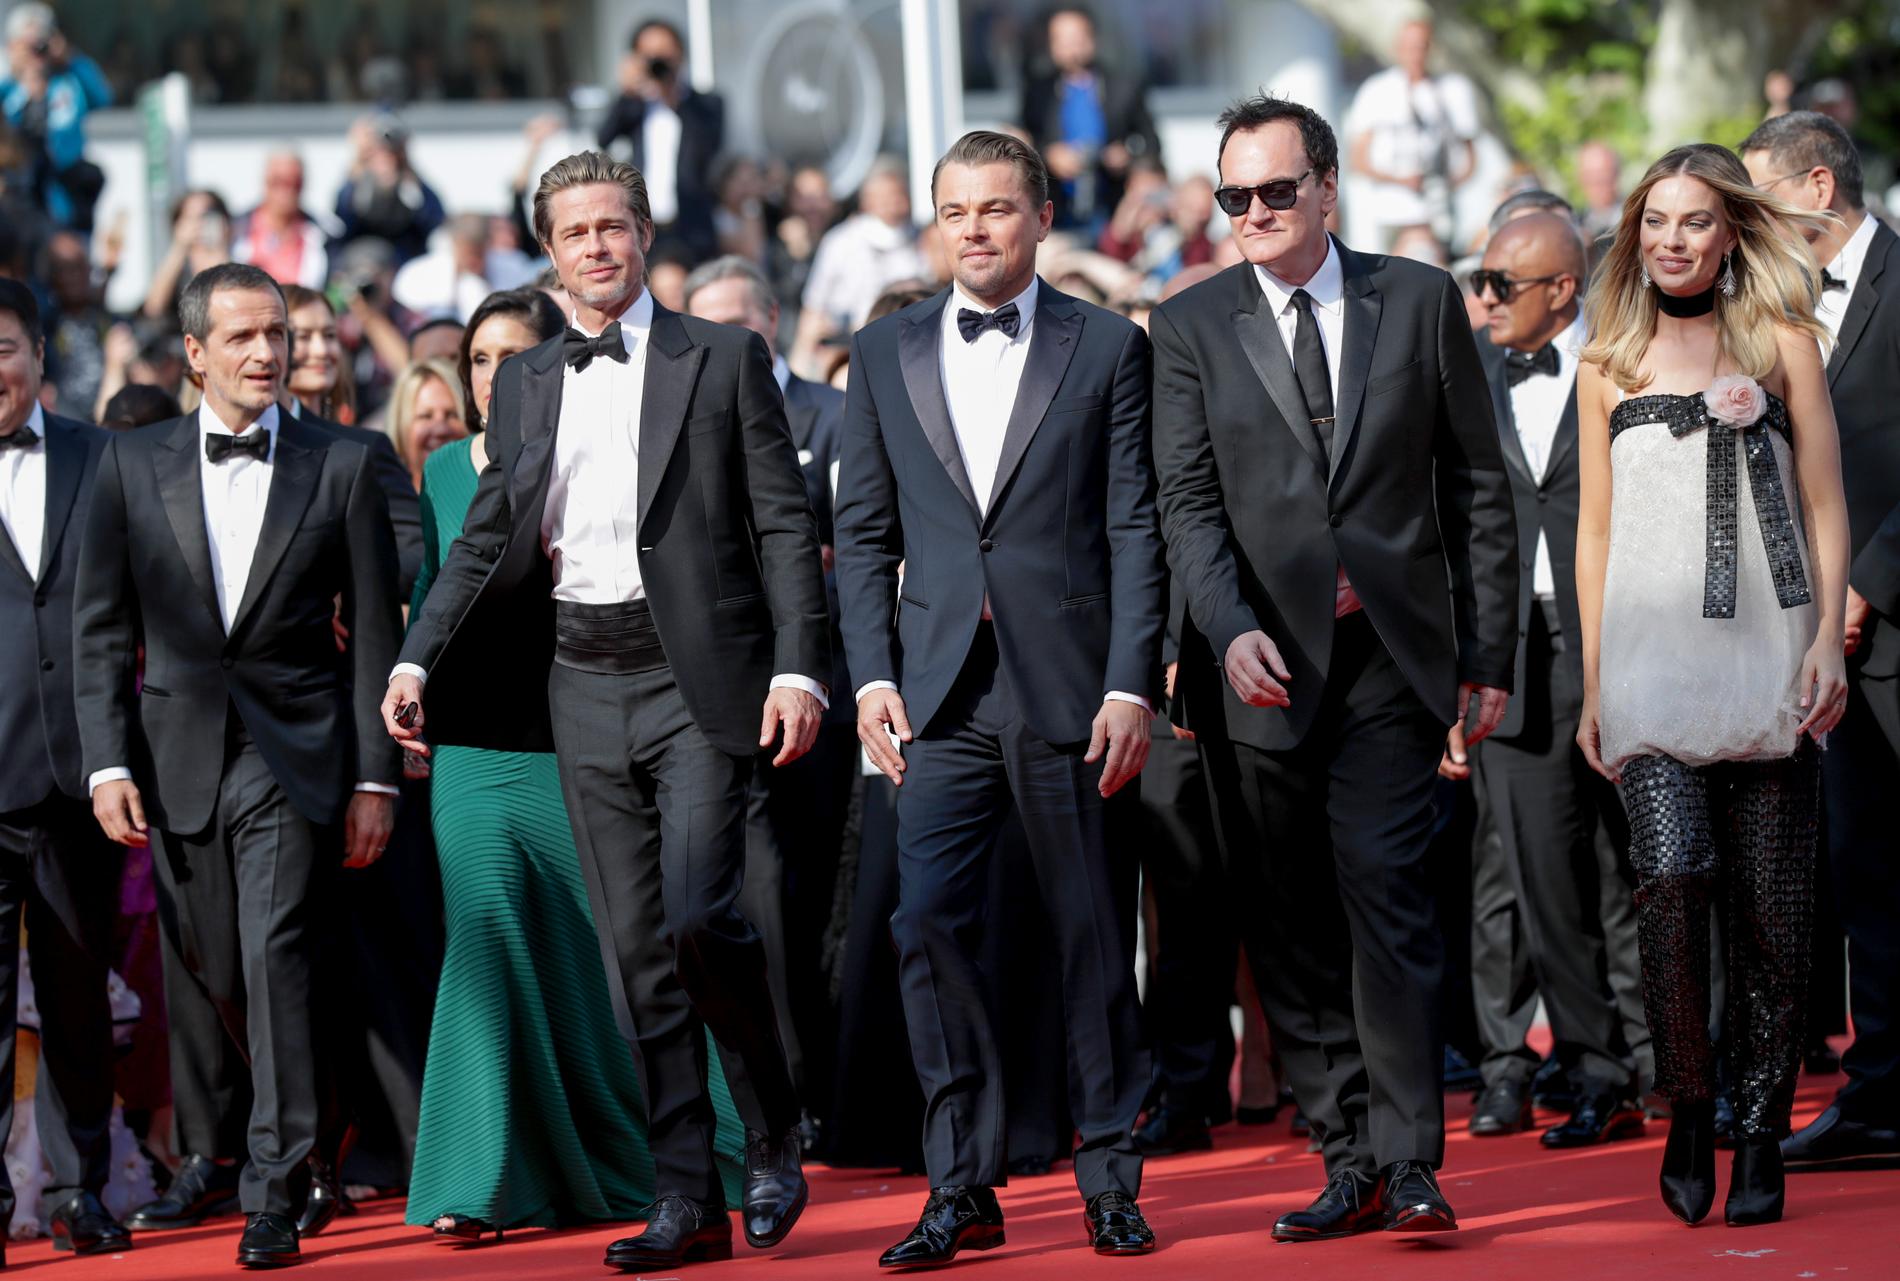 Kändisar på röda Cannes filmfestival.